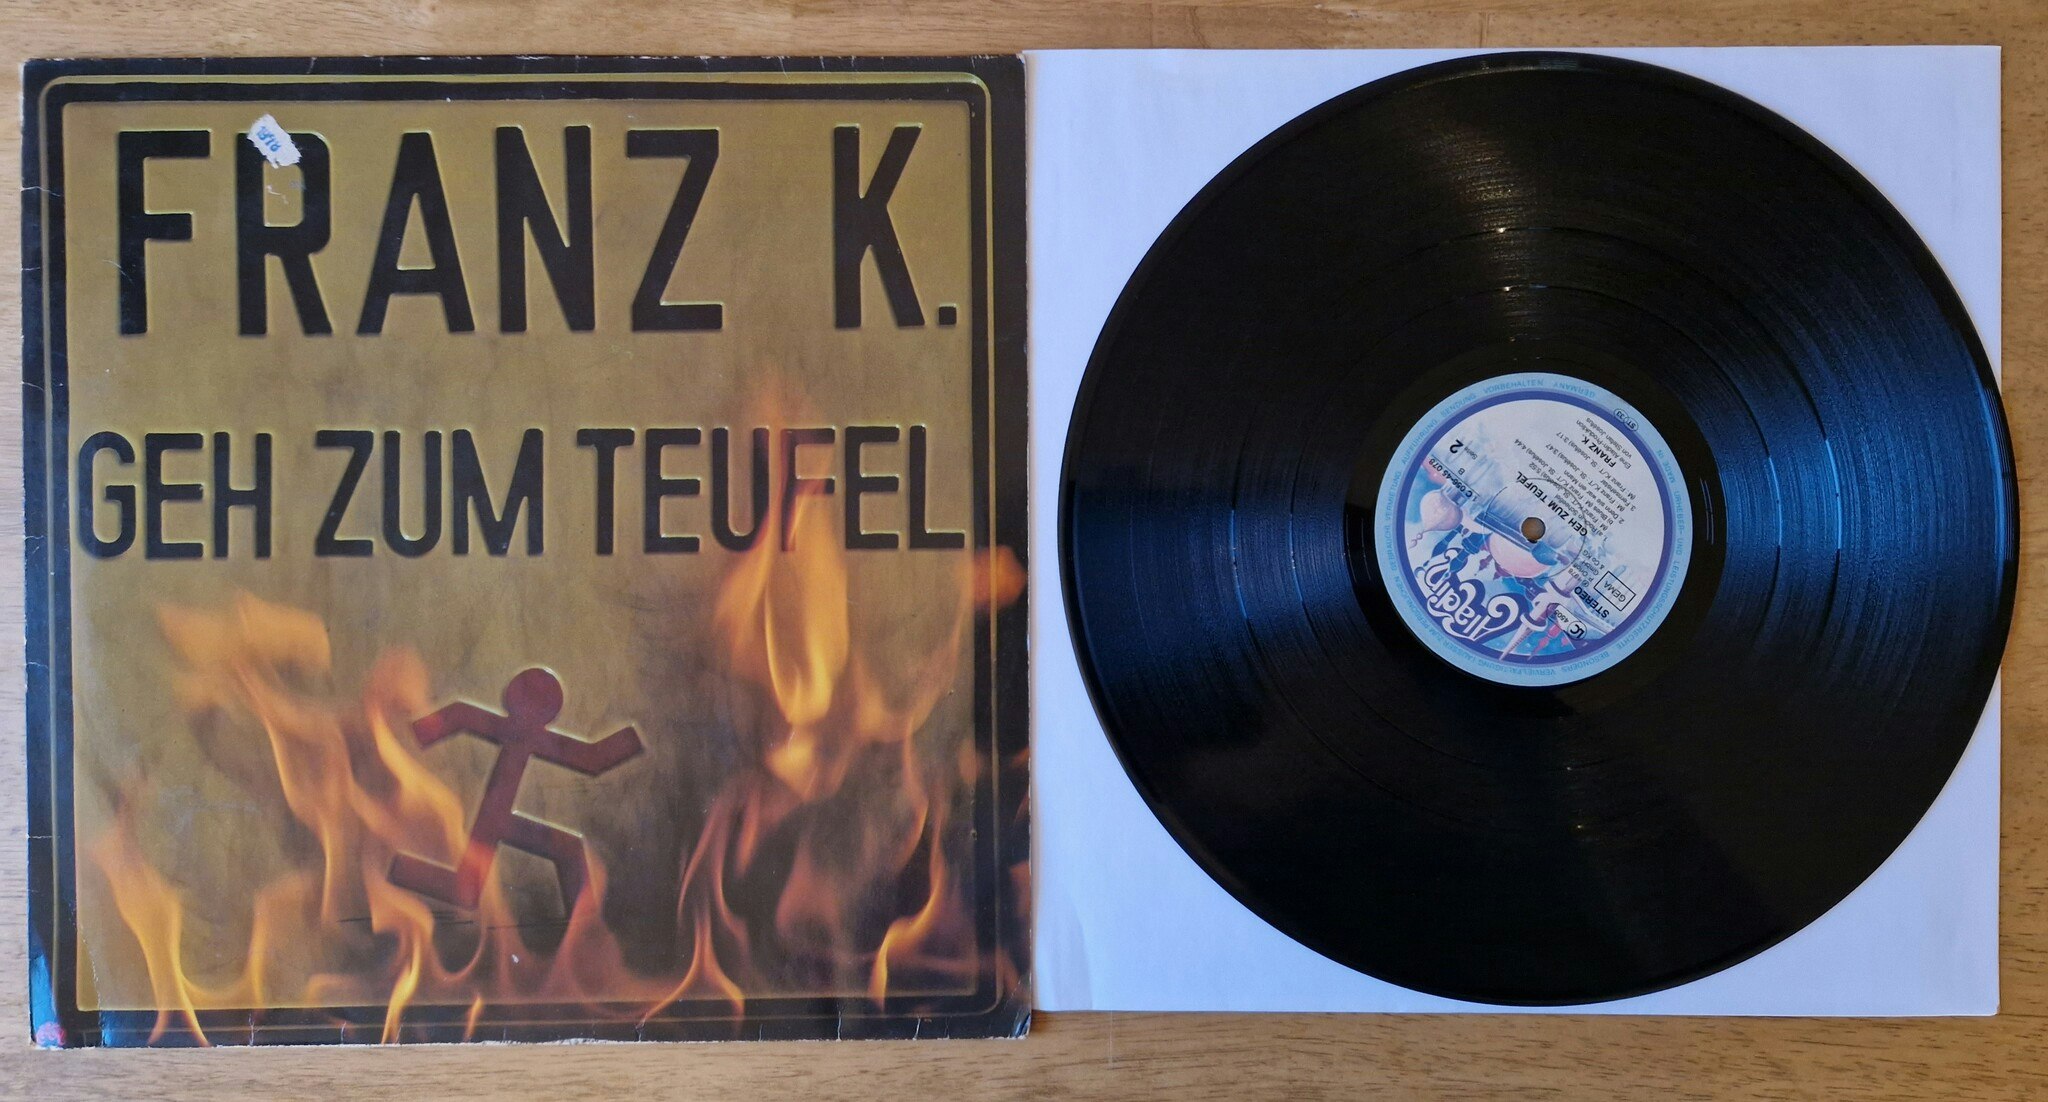 Franz K, Geh zum teufel. Vinyl LP